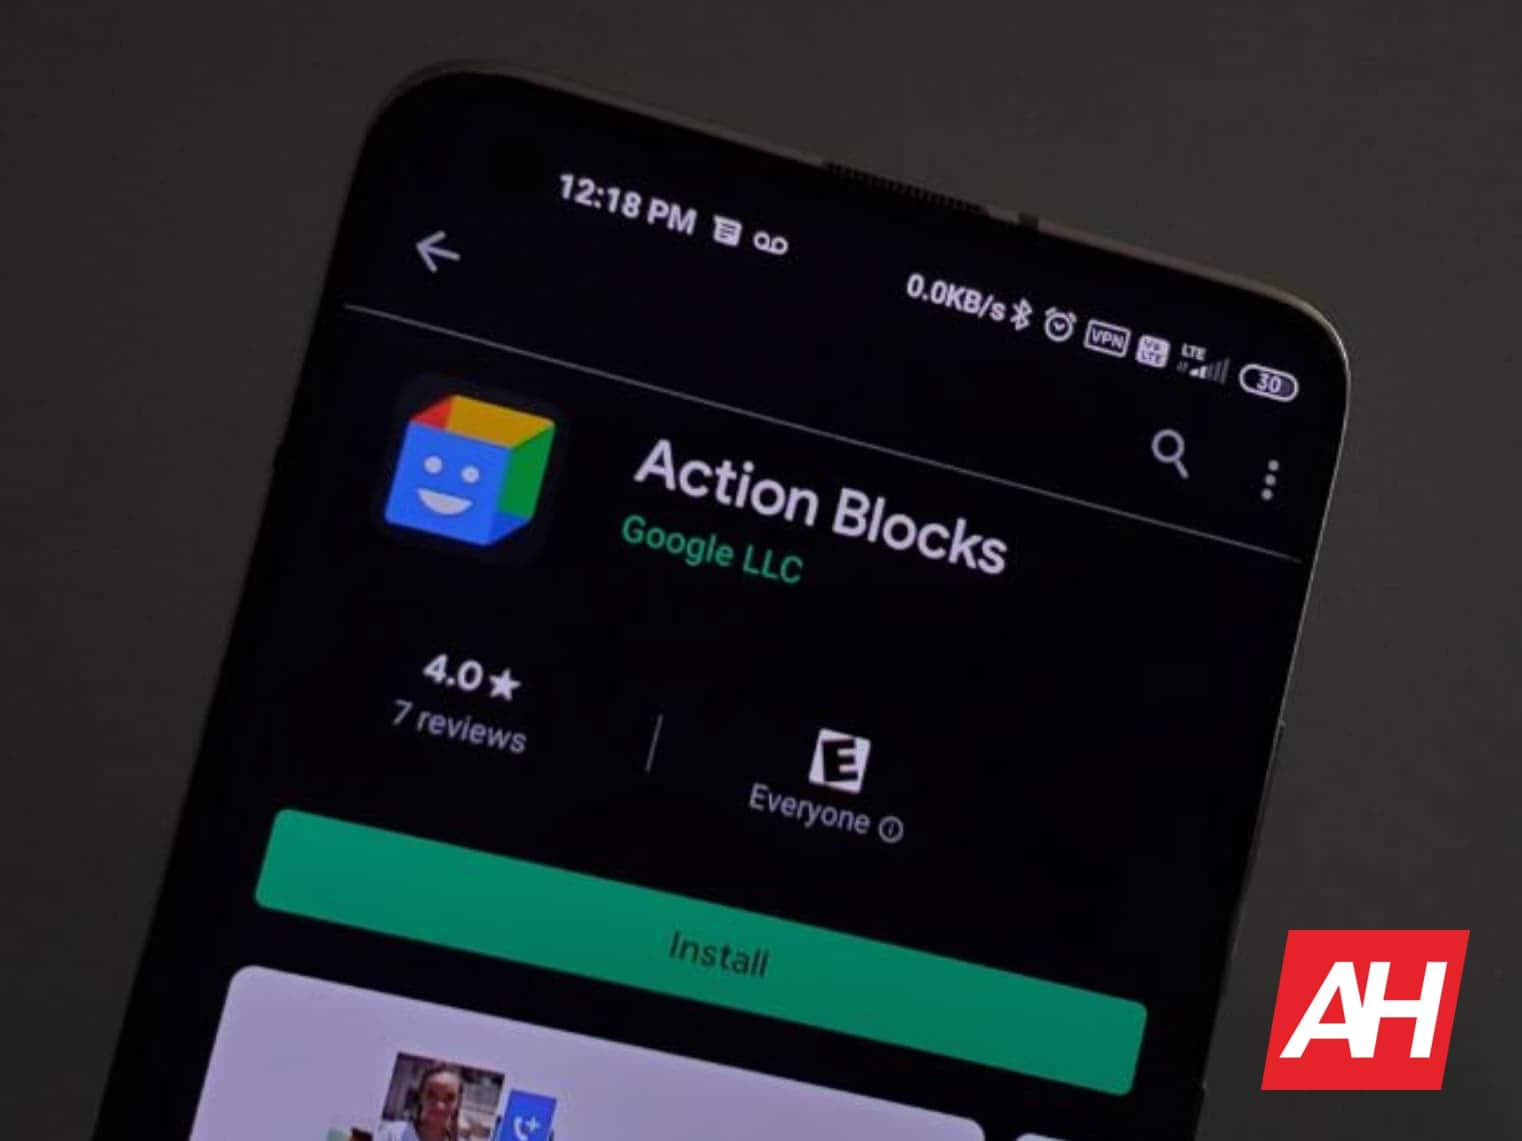 Google привносит в Android новые специальные возможности и блоки действий